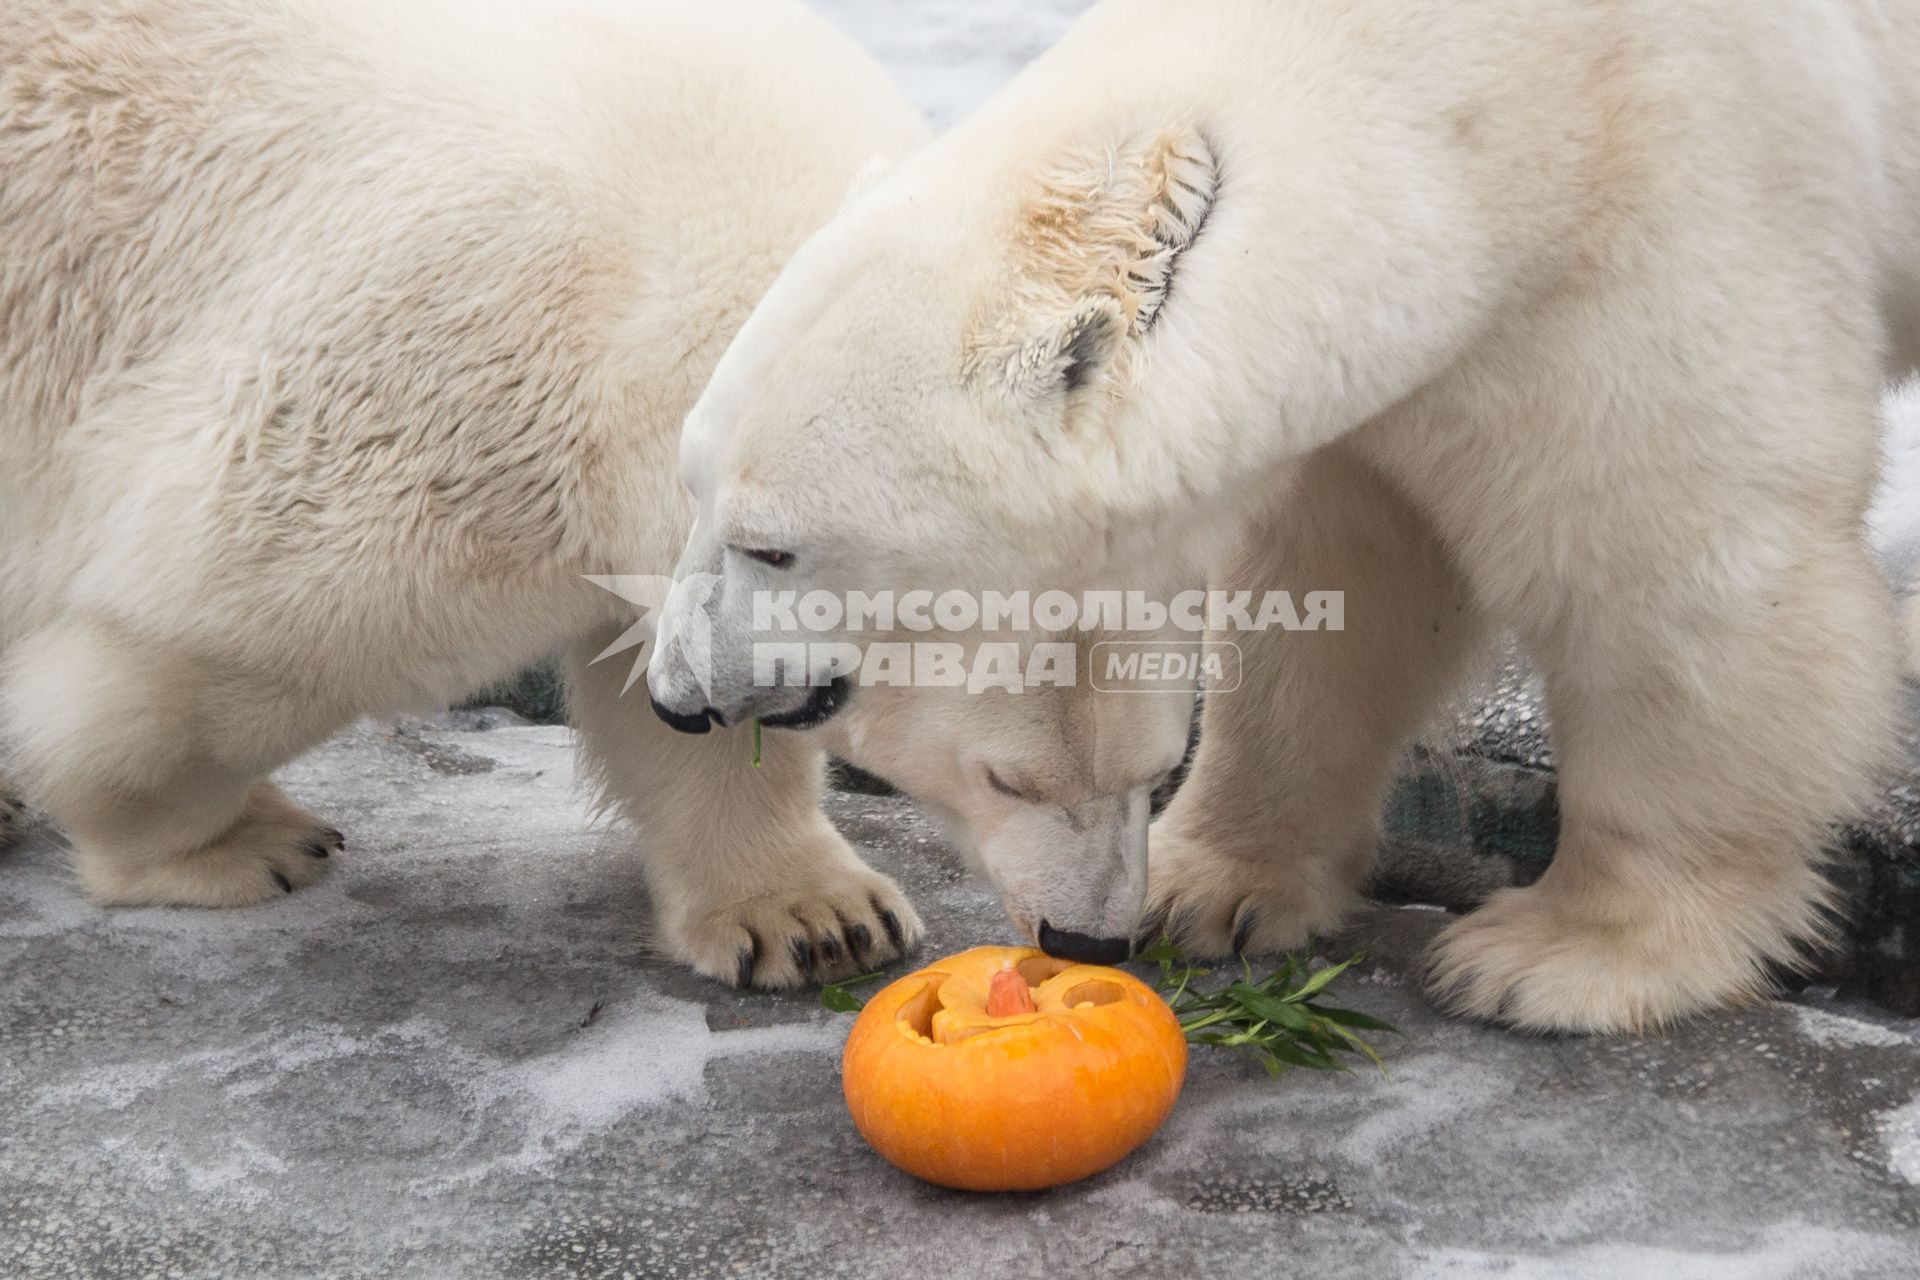 Челябинск. Хэллоуин в зоопарке. Белые медведи едят праздничную тыкву.